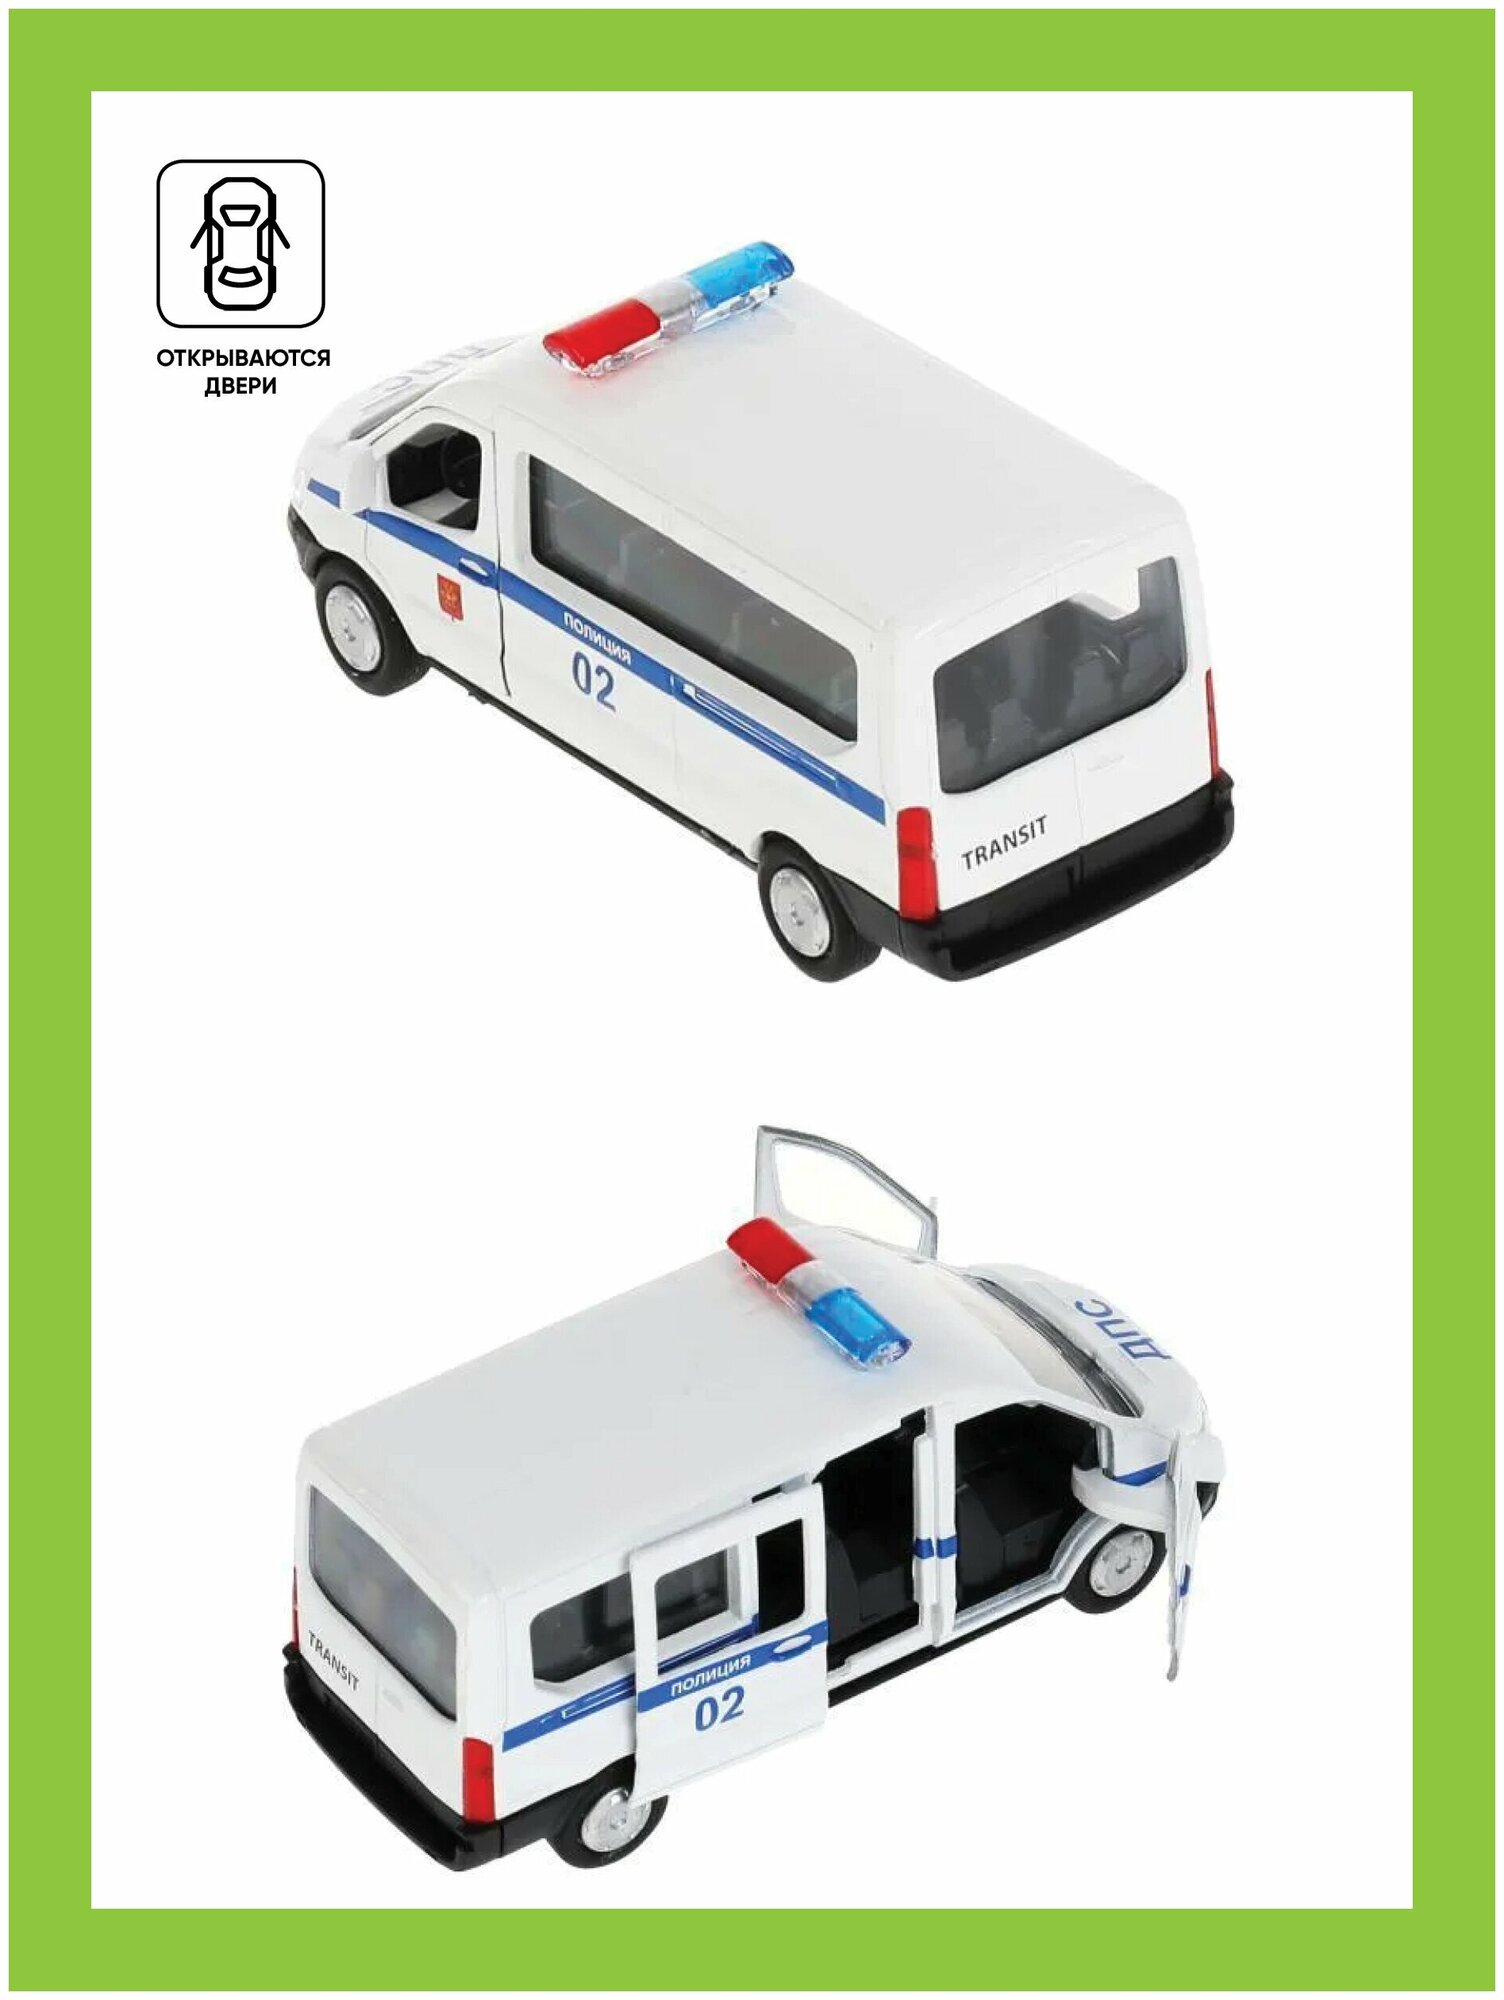 Модель машины Технопарк Ford Transit Полиция, инерционная SB-18-18-P(W)-WB